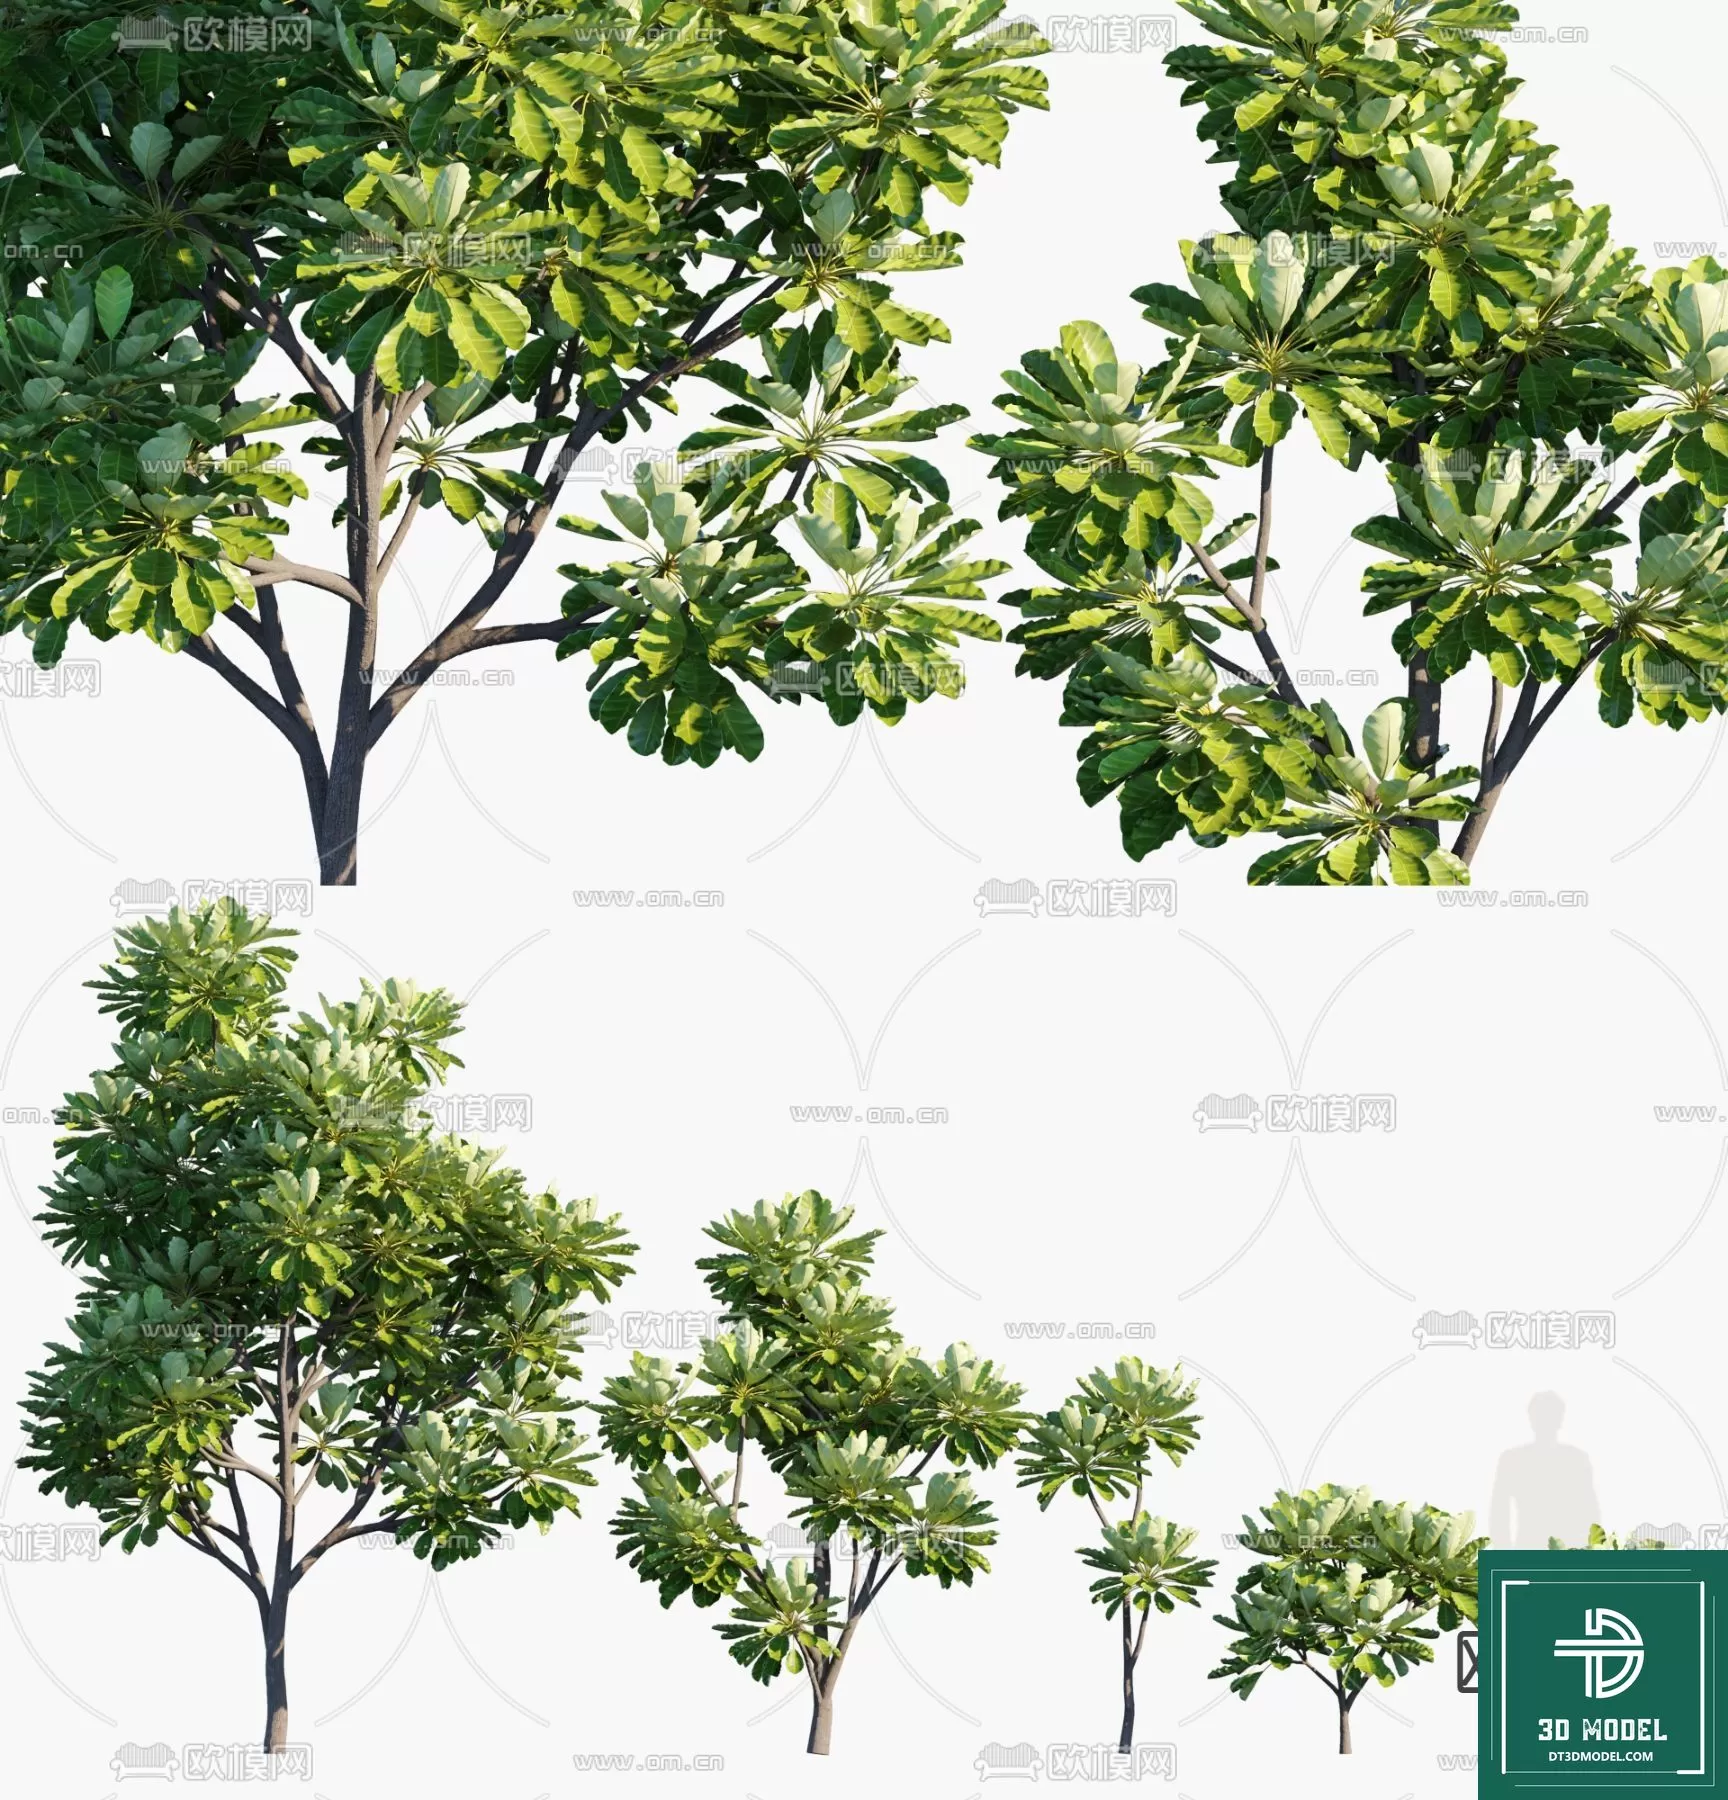 EXTERIOR – TREE – 3D MODELS – 289